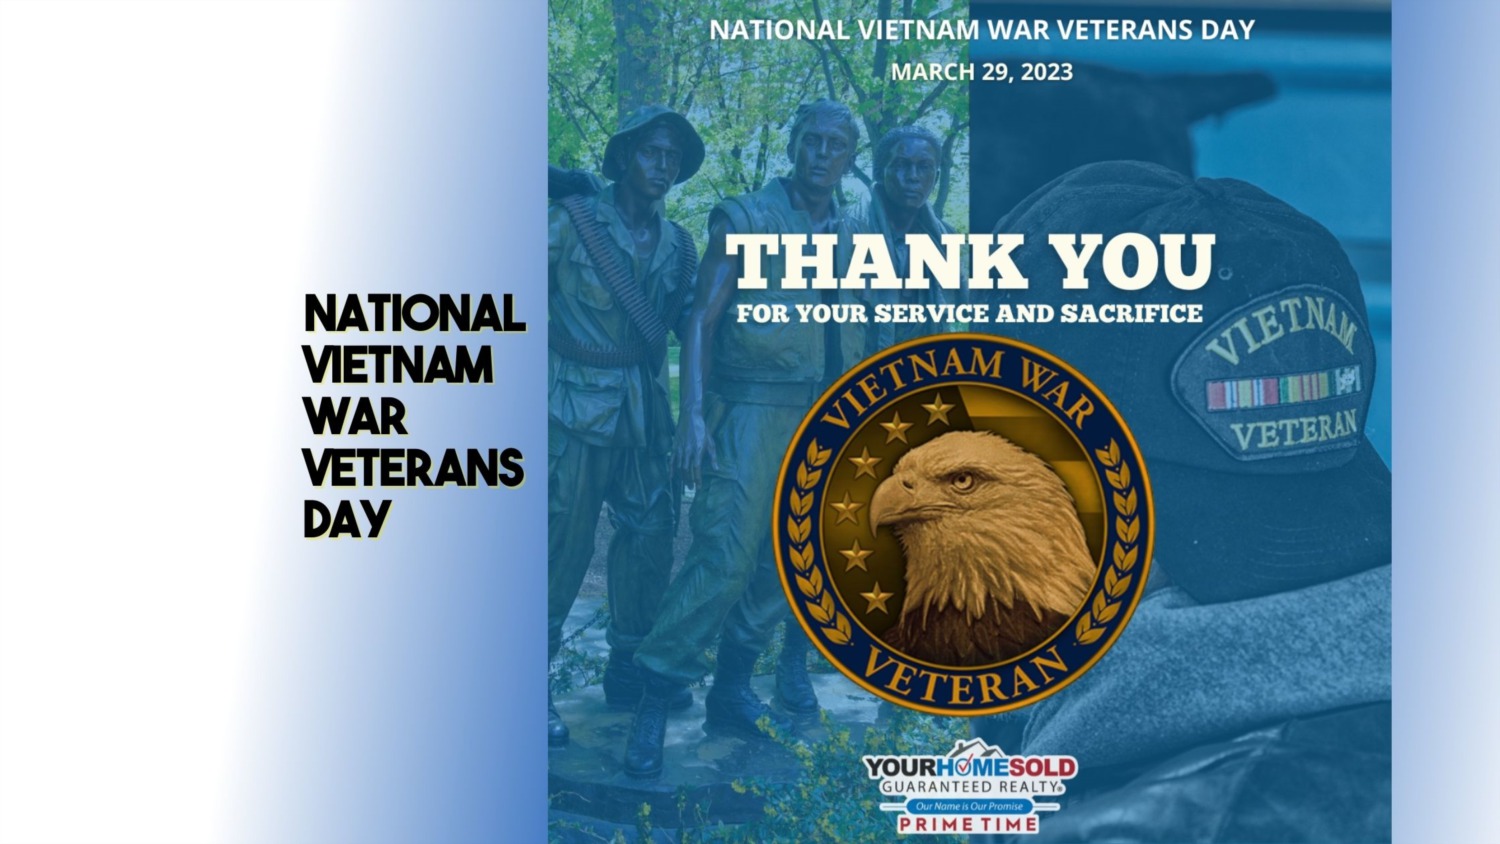 National Vietnam War Veterans Day 2023